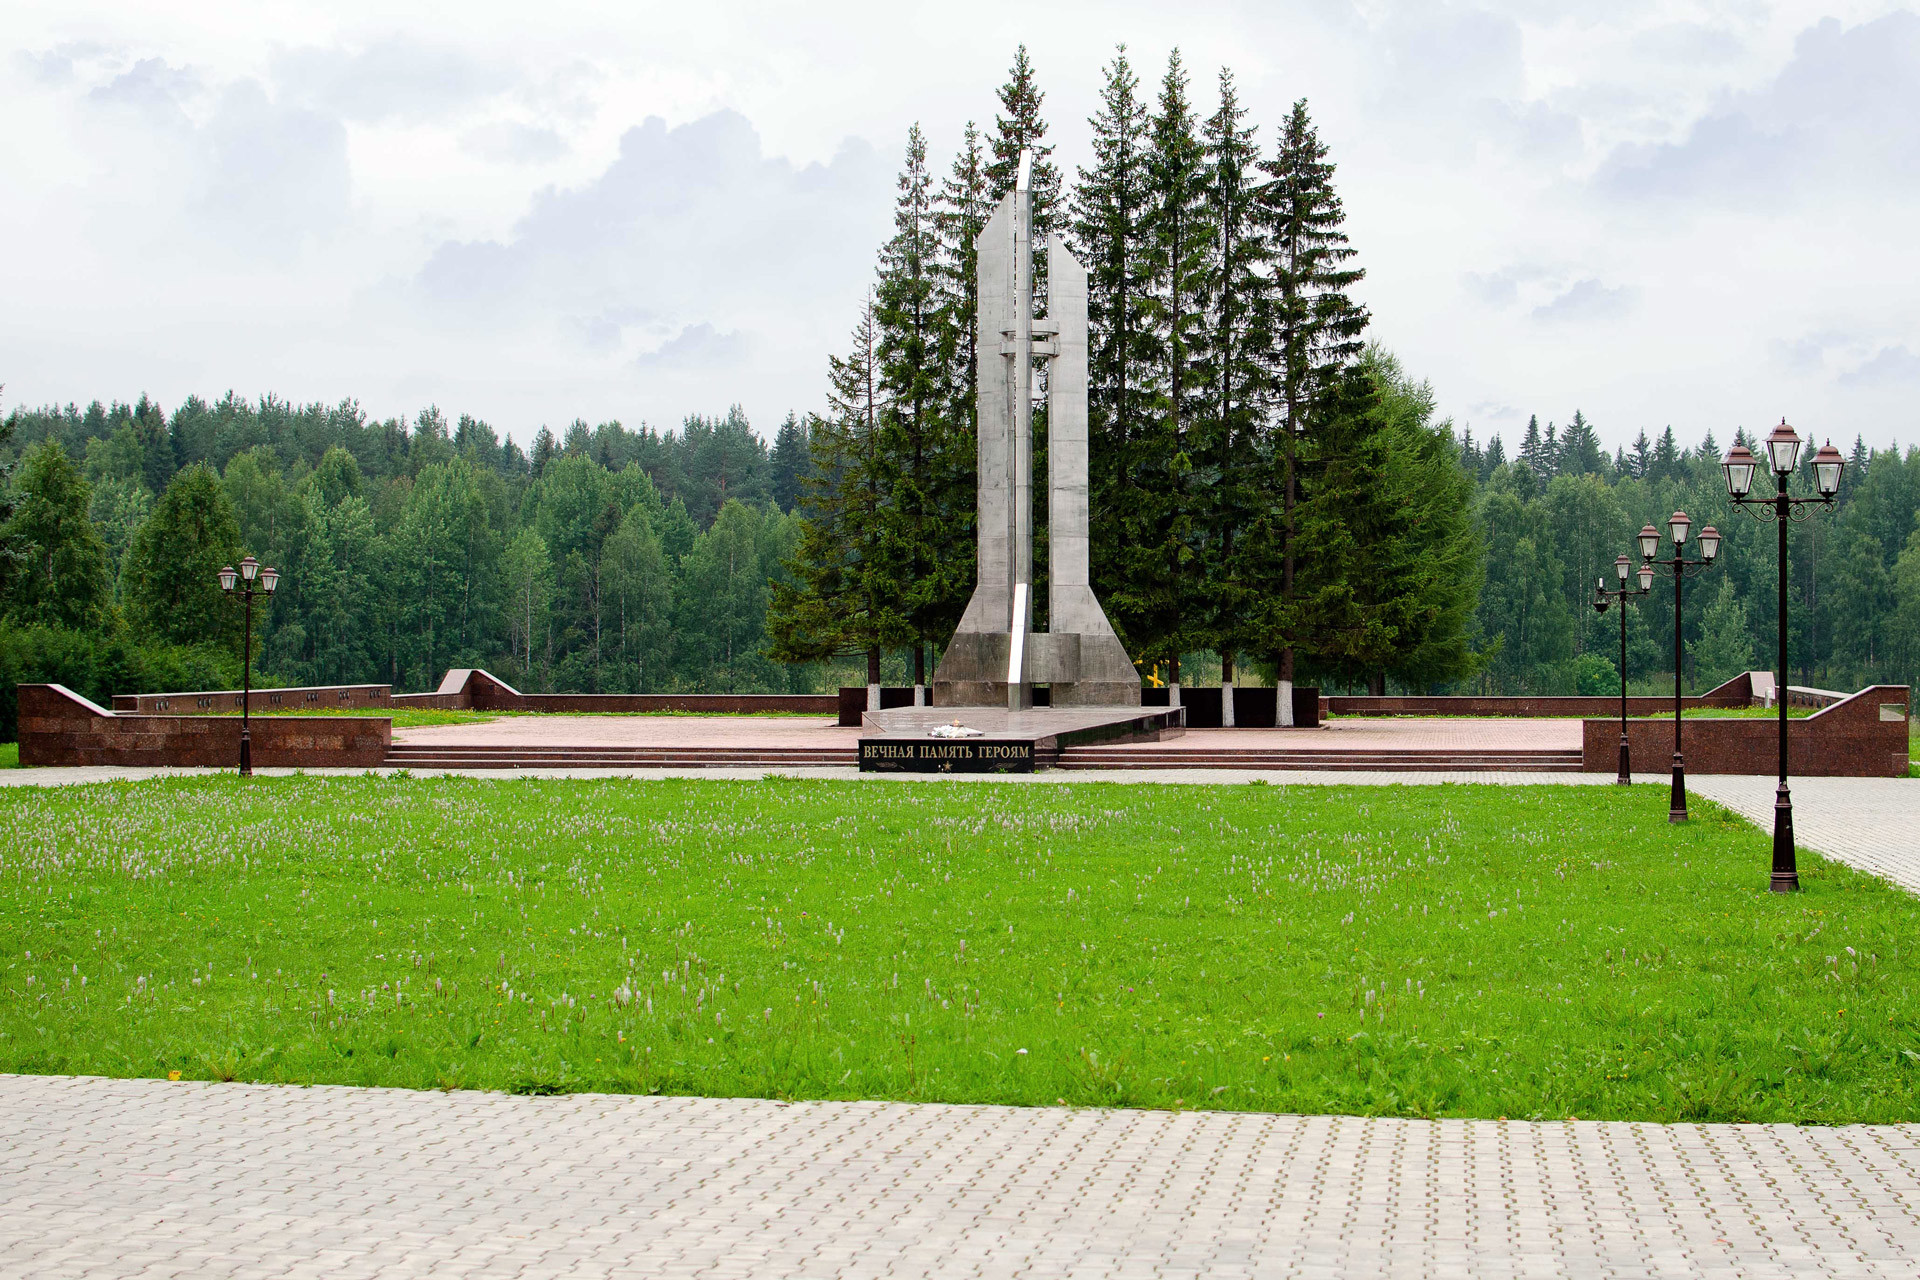 Споменик на гробљу посвећен Плесецкој трагедији.